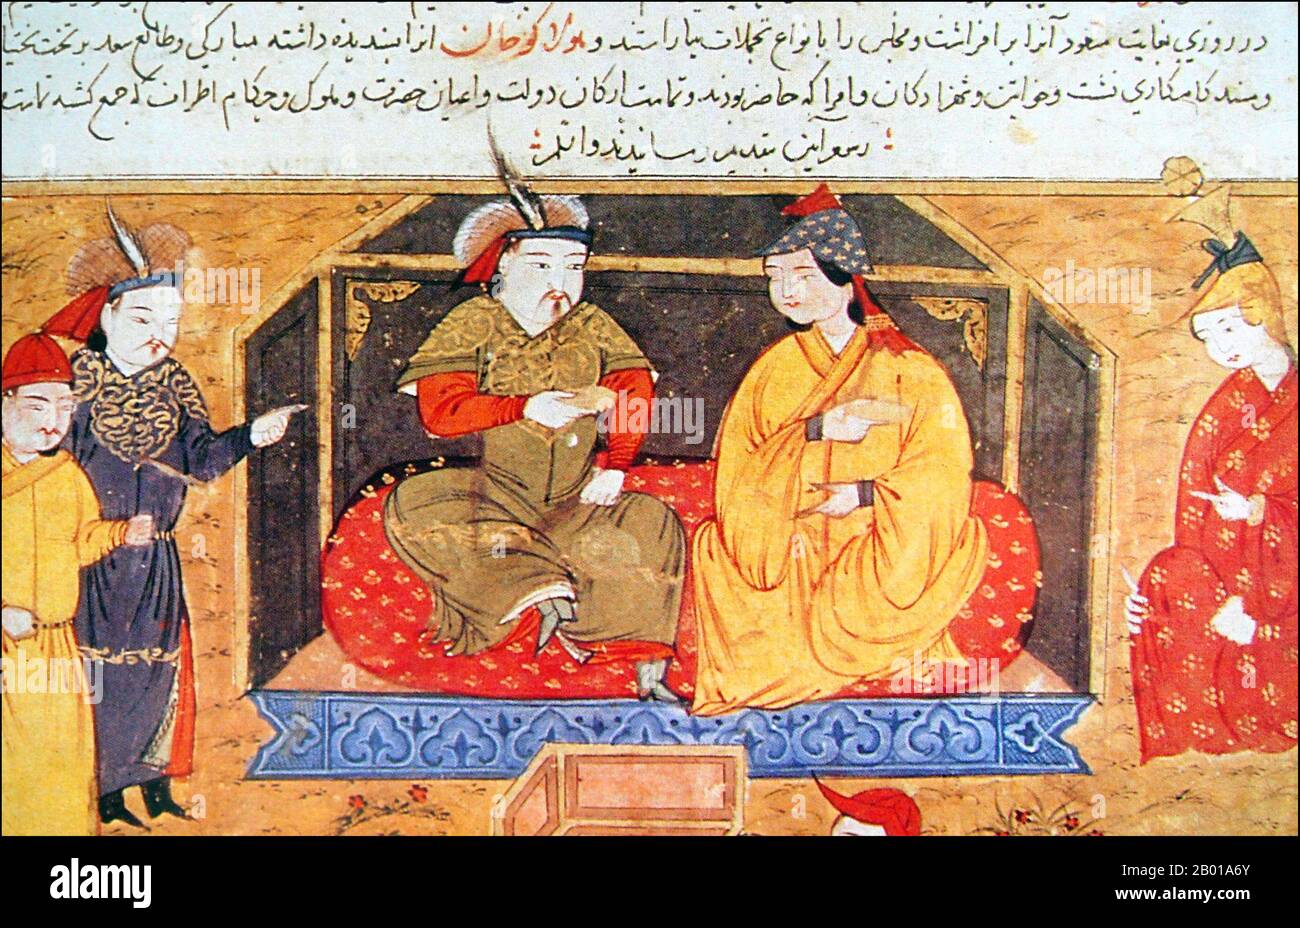 Iran/Mongolie: Hulagu Khan (c. 1217 - 8 février 1265) avec son épouse chrétienne Nestorienne Dokuz Khatun, de Rashid-al-DIN Hamadani (1237-1318), 'Histoire du monde', 14th siècle. Hulagu Khan, également connu sous le nom de Hülegü, Hulegu ou Halaku, était un dirigeant mongol qui a conquis une grande partie de l'Asie du Sud-Ouest. Fils de Tolui et de la princesse Kerait Sorghaghtani Beki, il était petit-fils de Gengis Khan, et frère d'Arik Boke, Möngke Khan et Kublai Khan. L'armée de Hulagu a considérablement étendu la partie sud-ouest de l'Empire mongol, en fondant l'Ilkhanate de Perse, précurseur de la dynastie Safavide. Banque D'Images